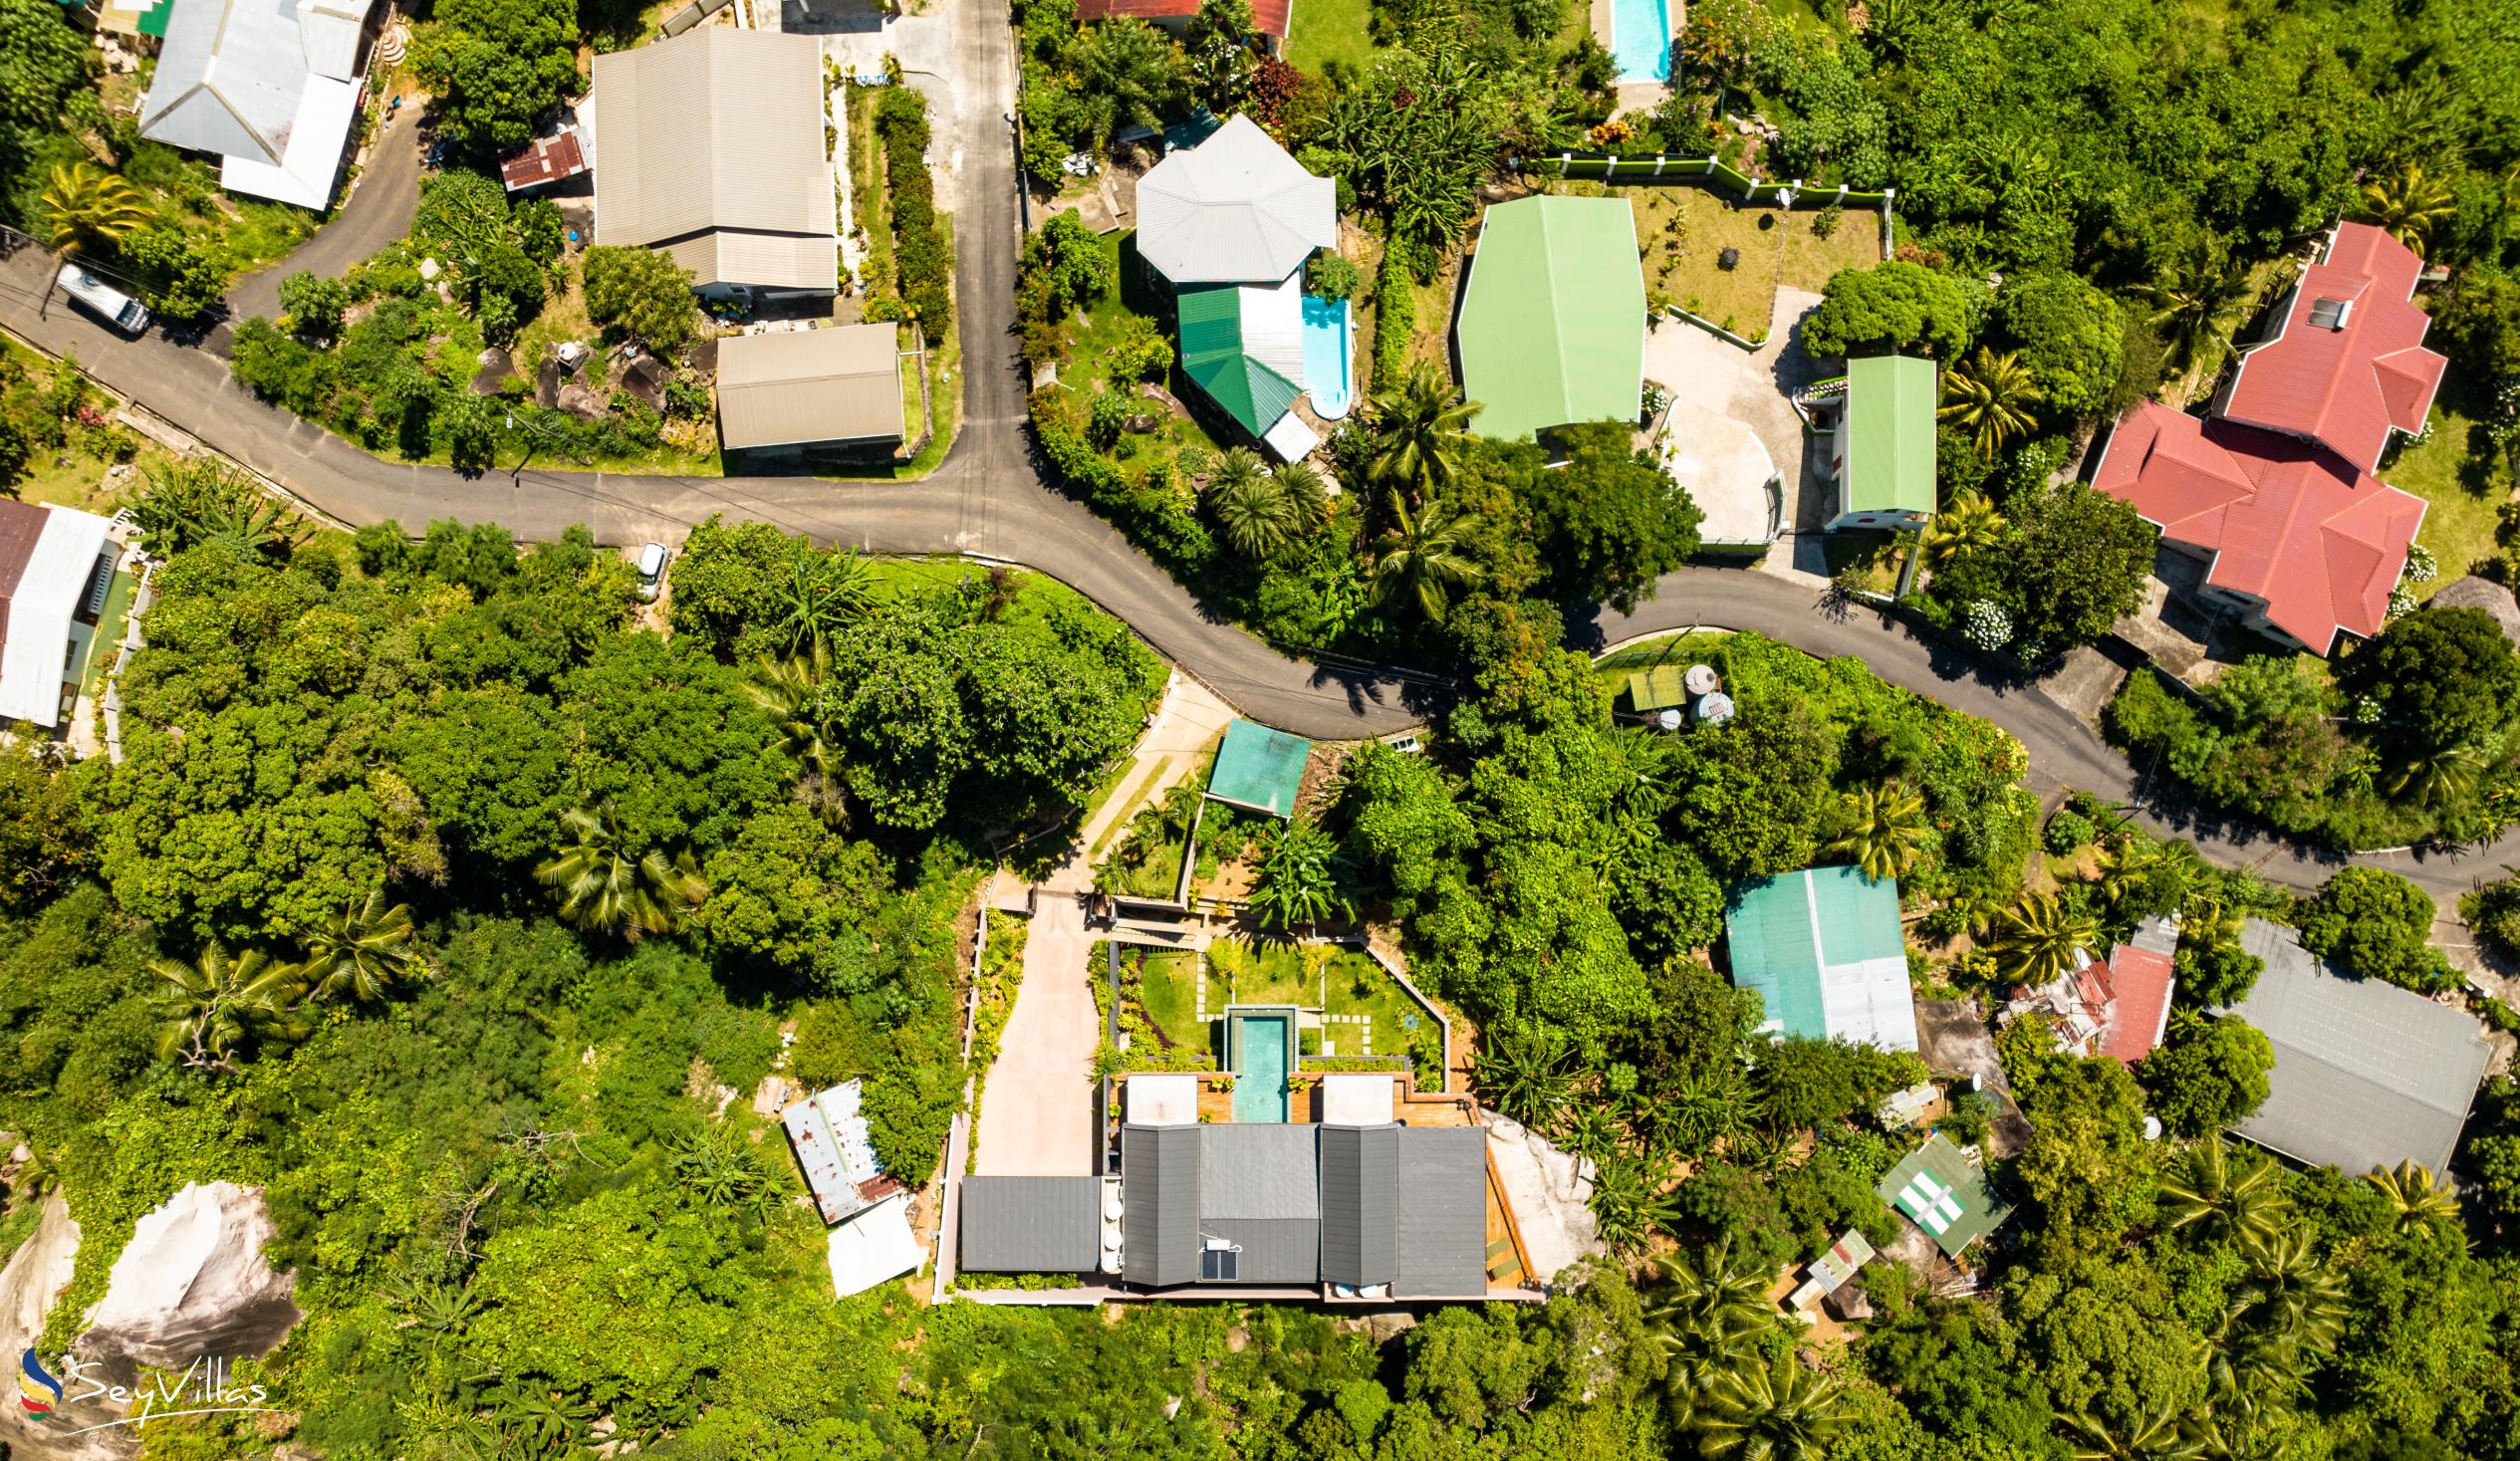 Foto 14: Maison Gaia - Extérieur - Mahé (Seychelles)